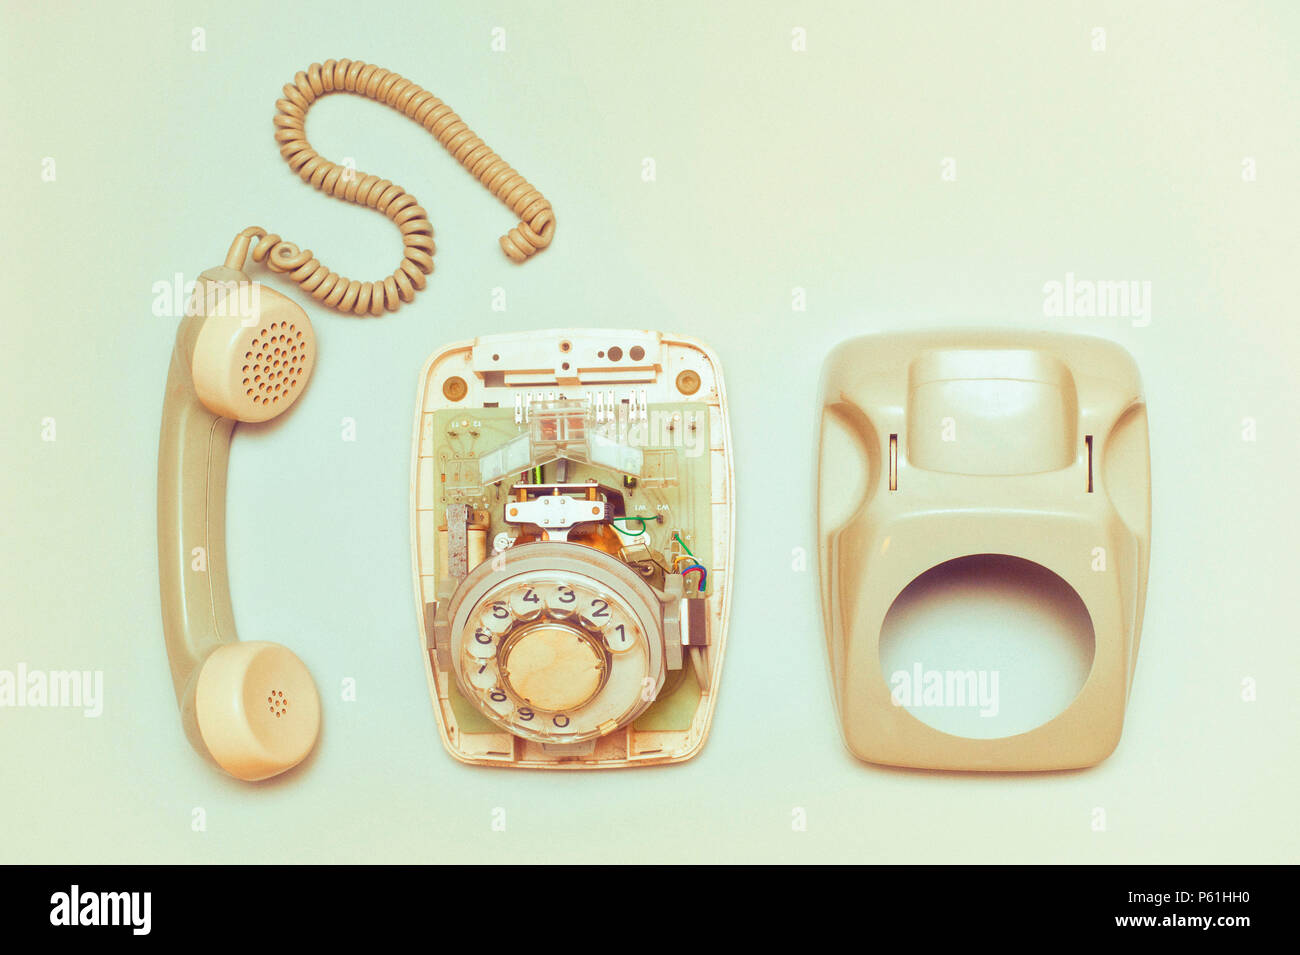 Téléphone à cadran rotatif vintage démontés Banque D'Images